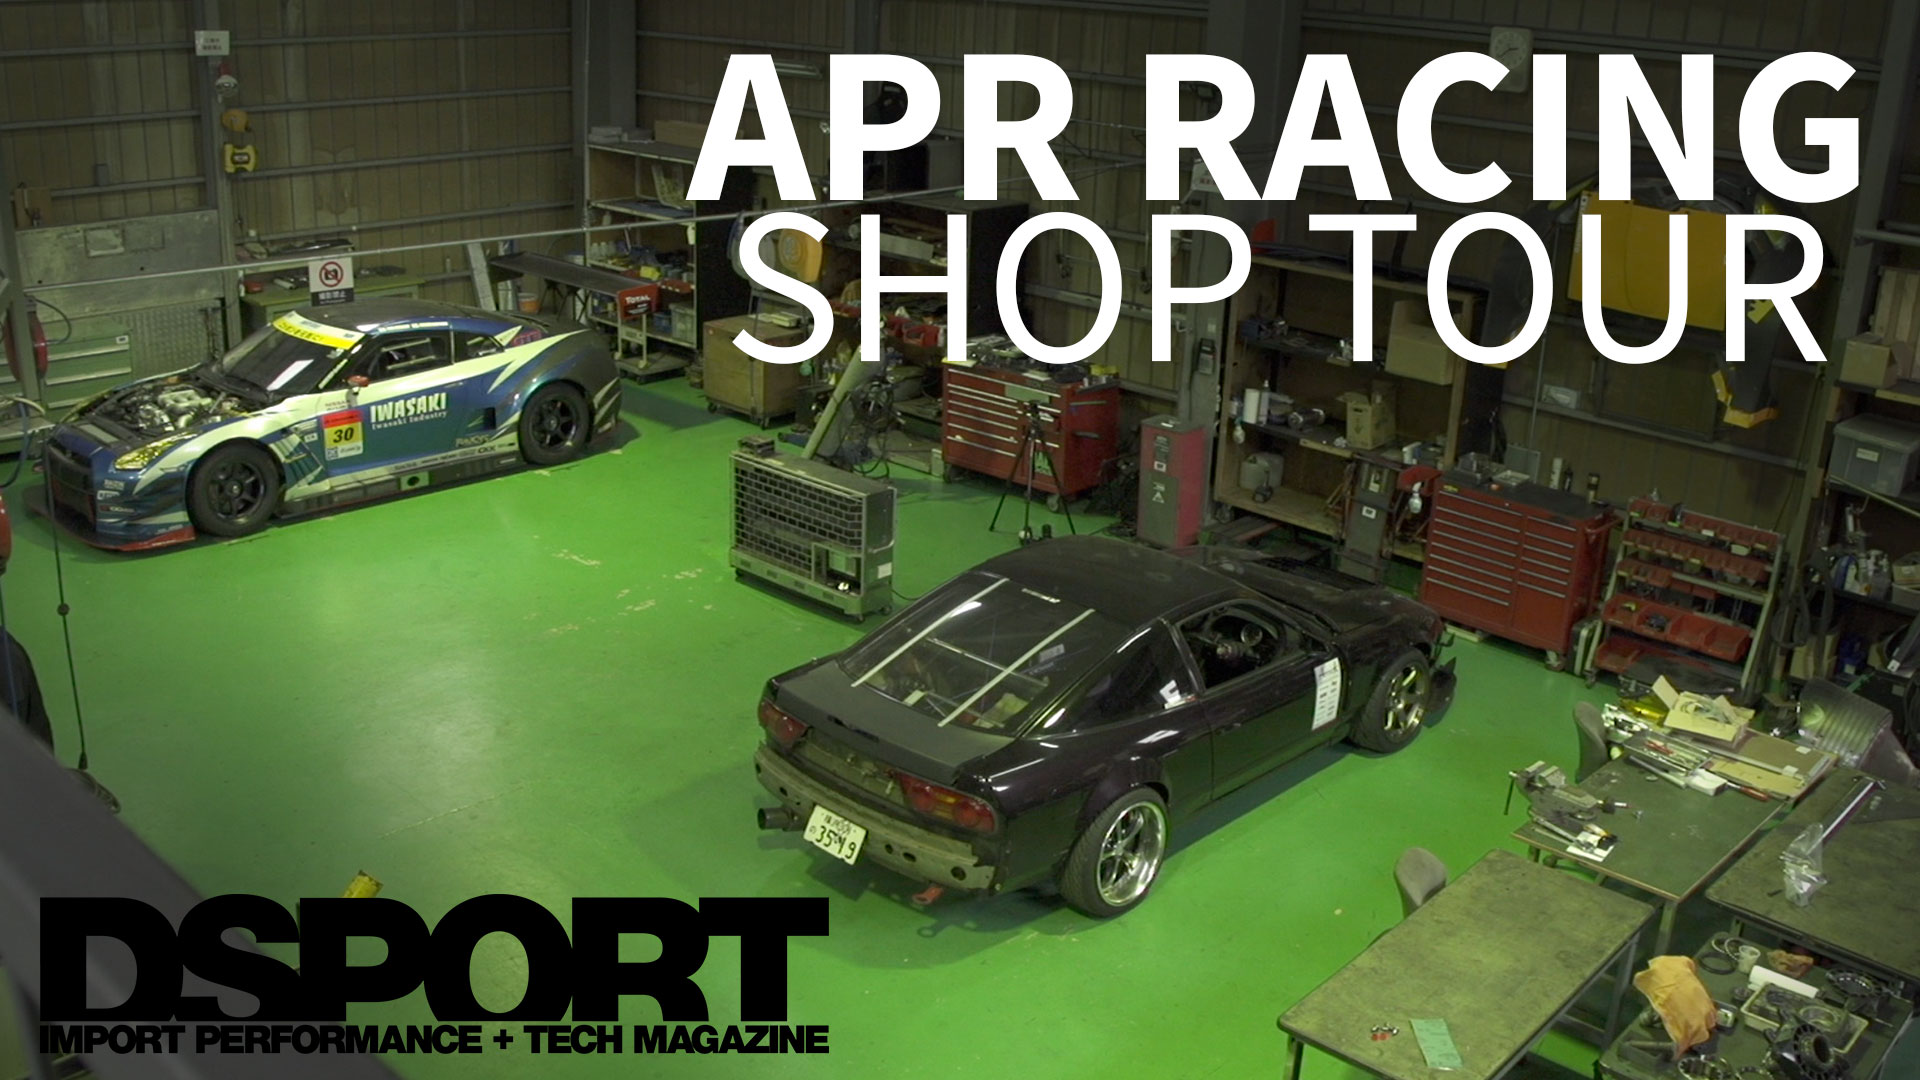 APR Racing Shop Tour